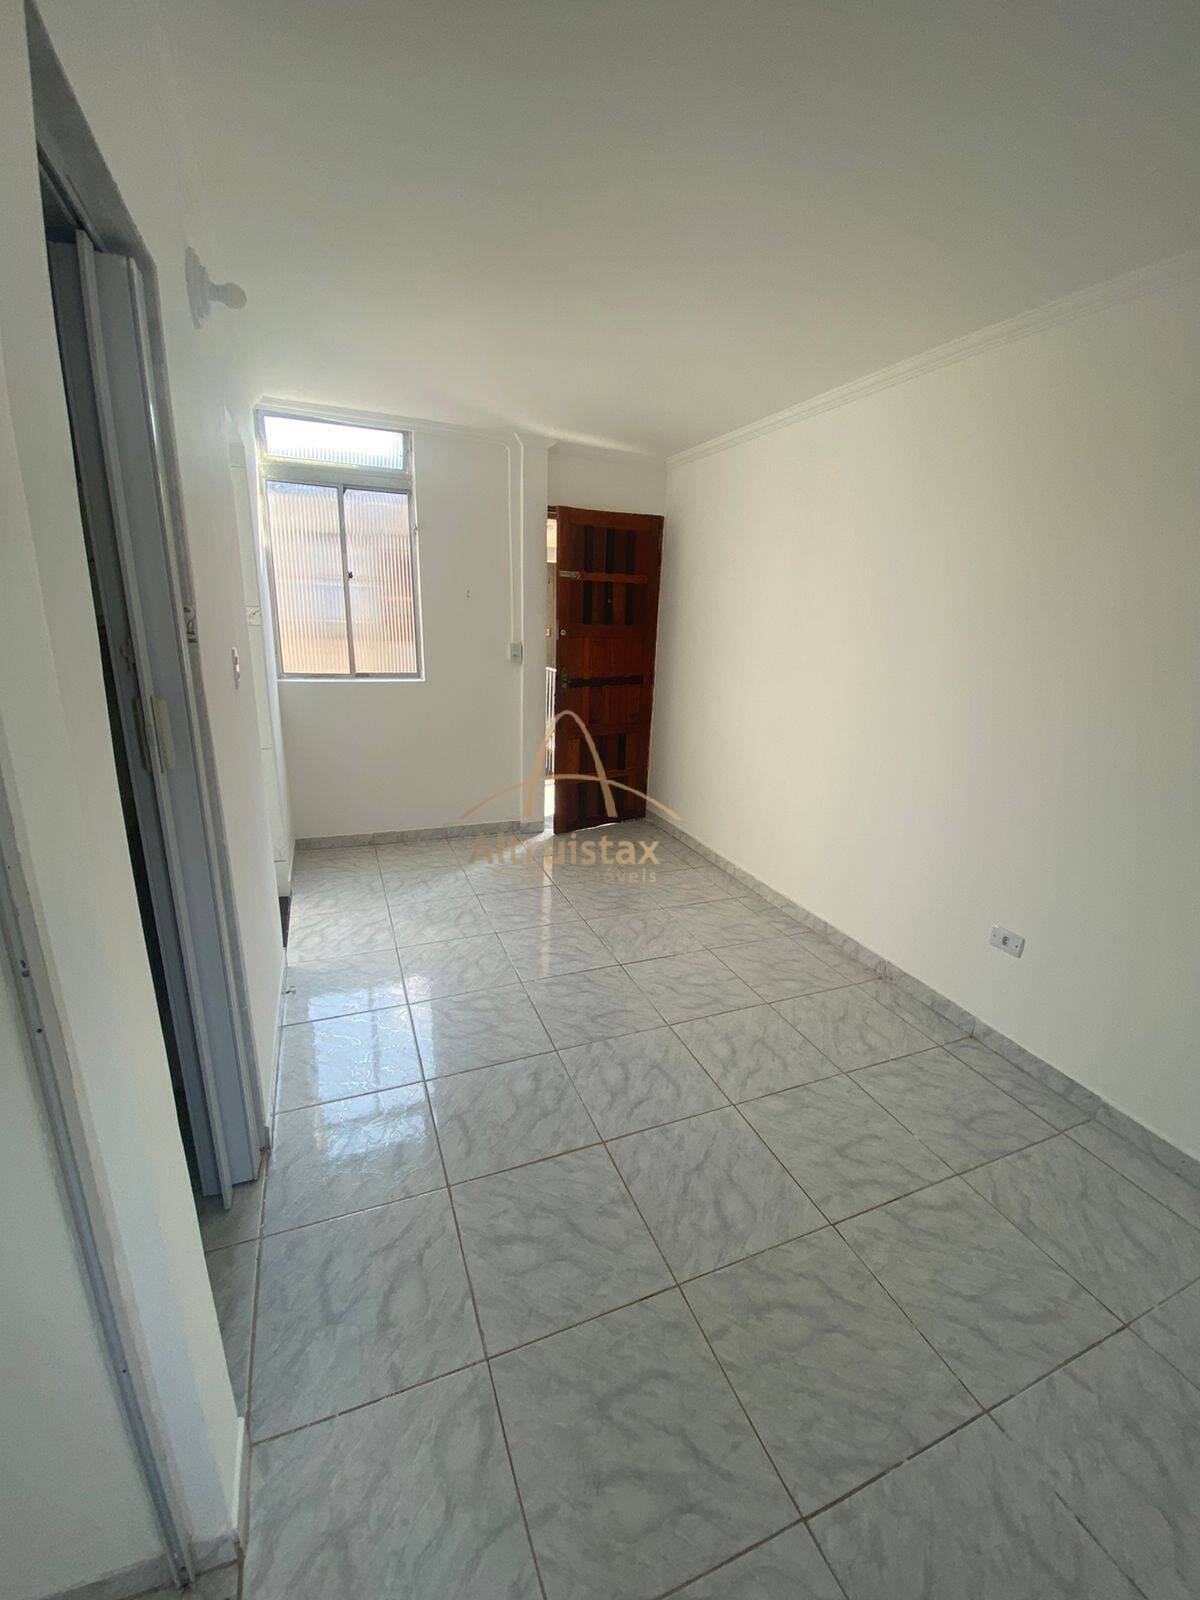 Apartamento, 2 quartos, 38 m² - Foto 3